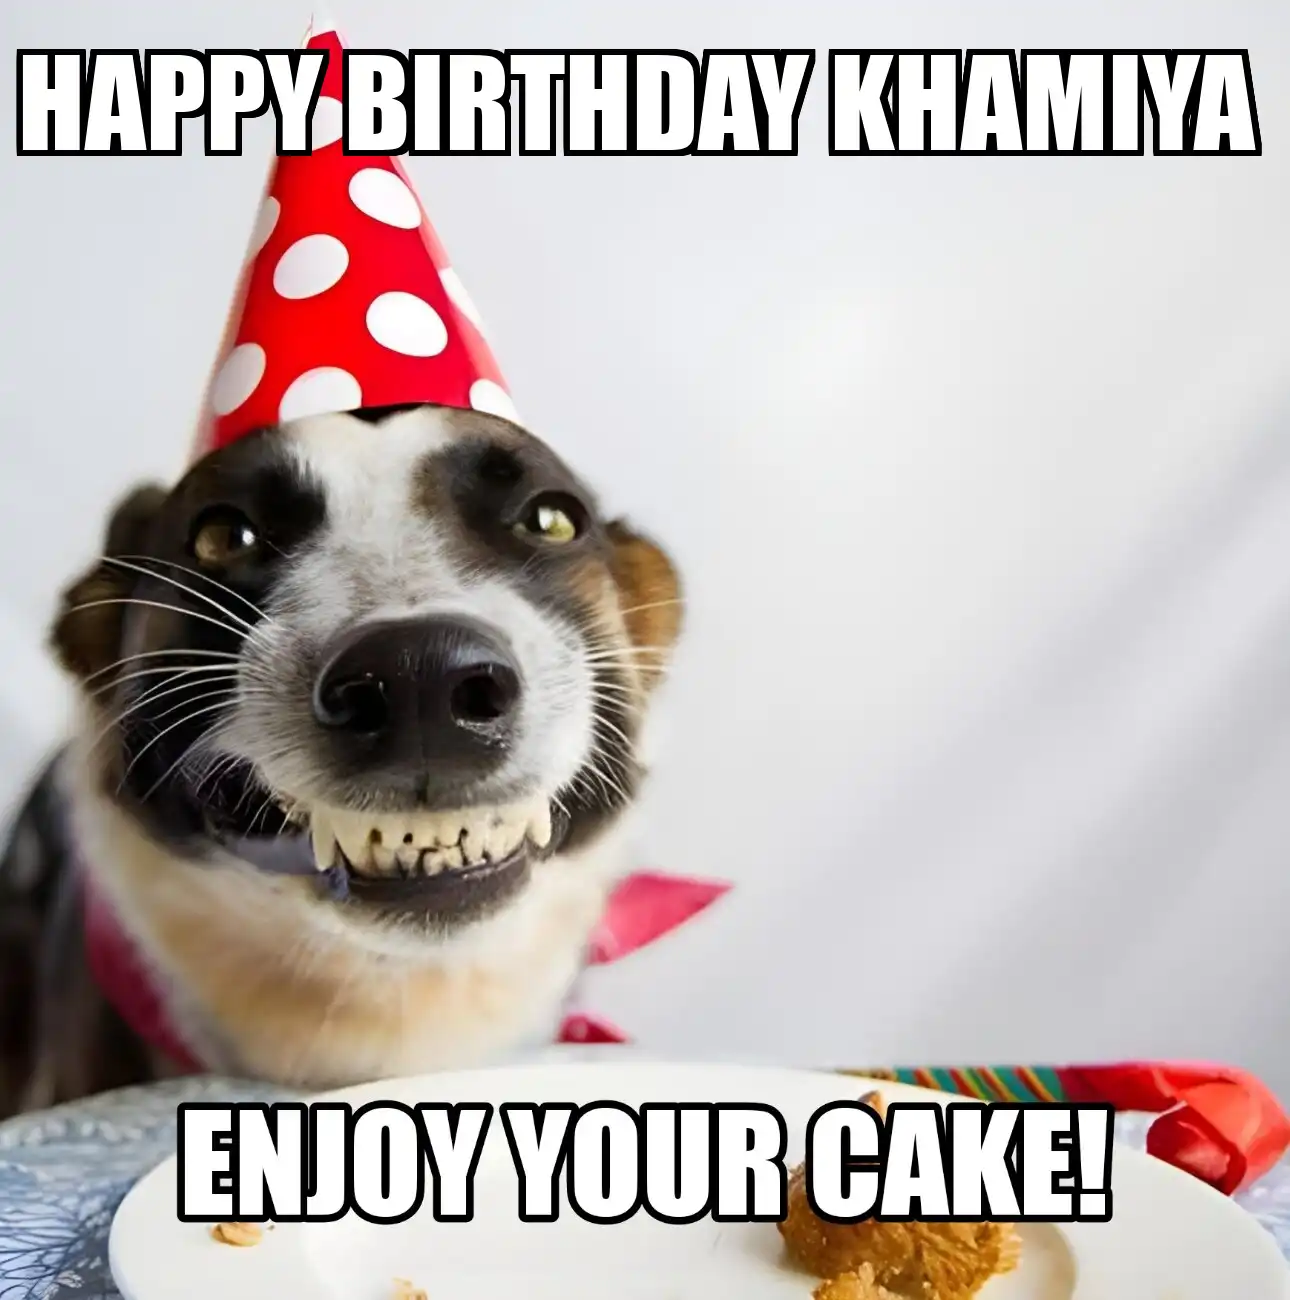 Happy Birthday Khamiya Enjoy Your Cake Dog Meme